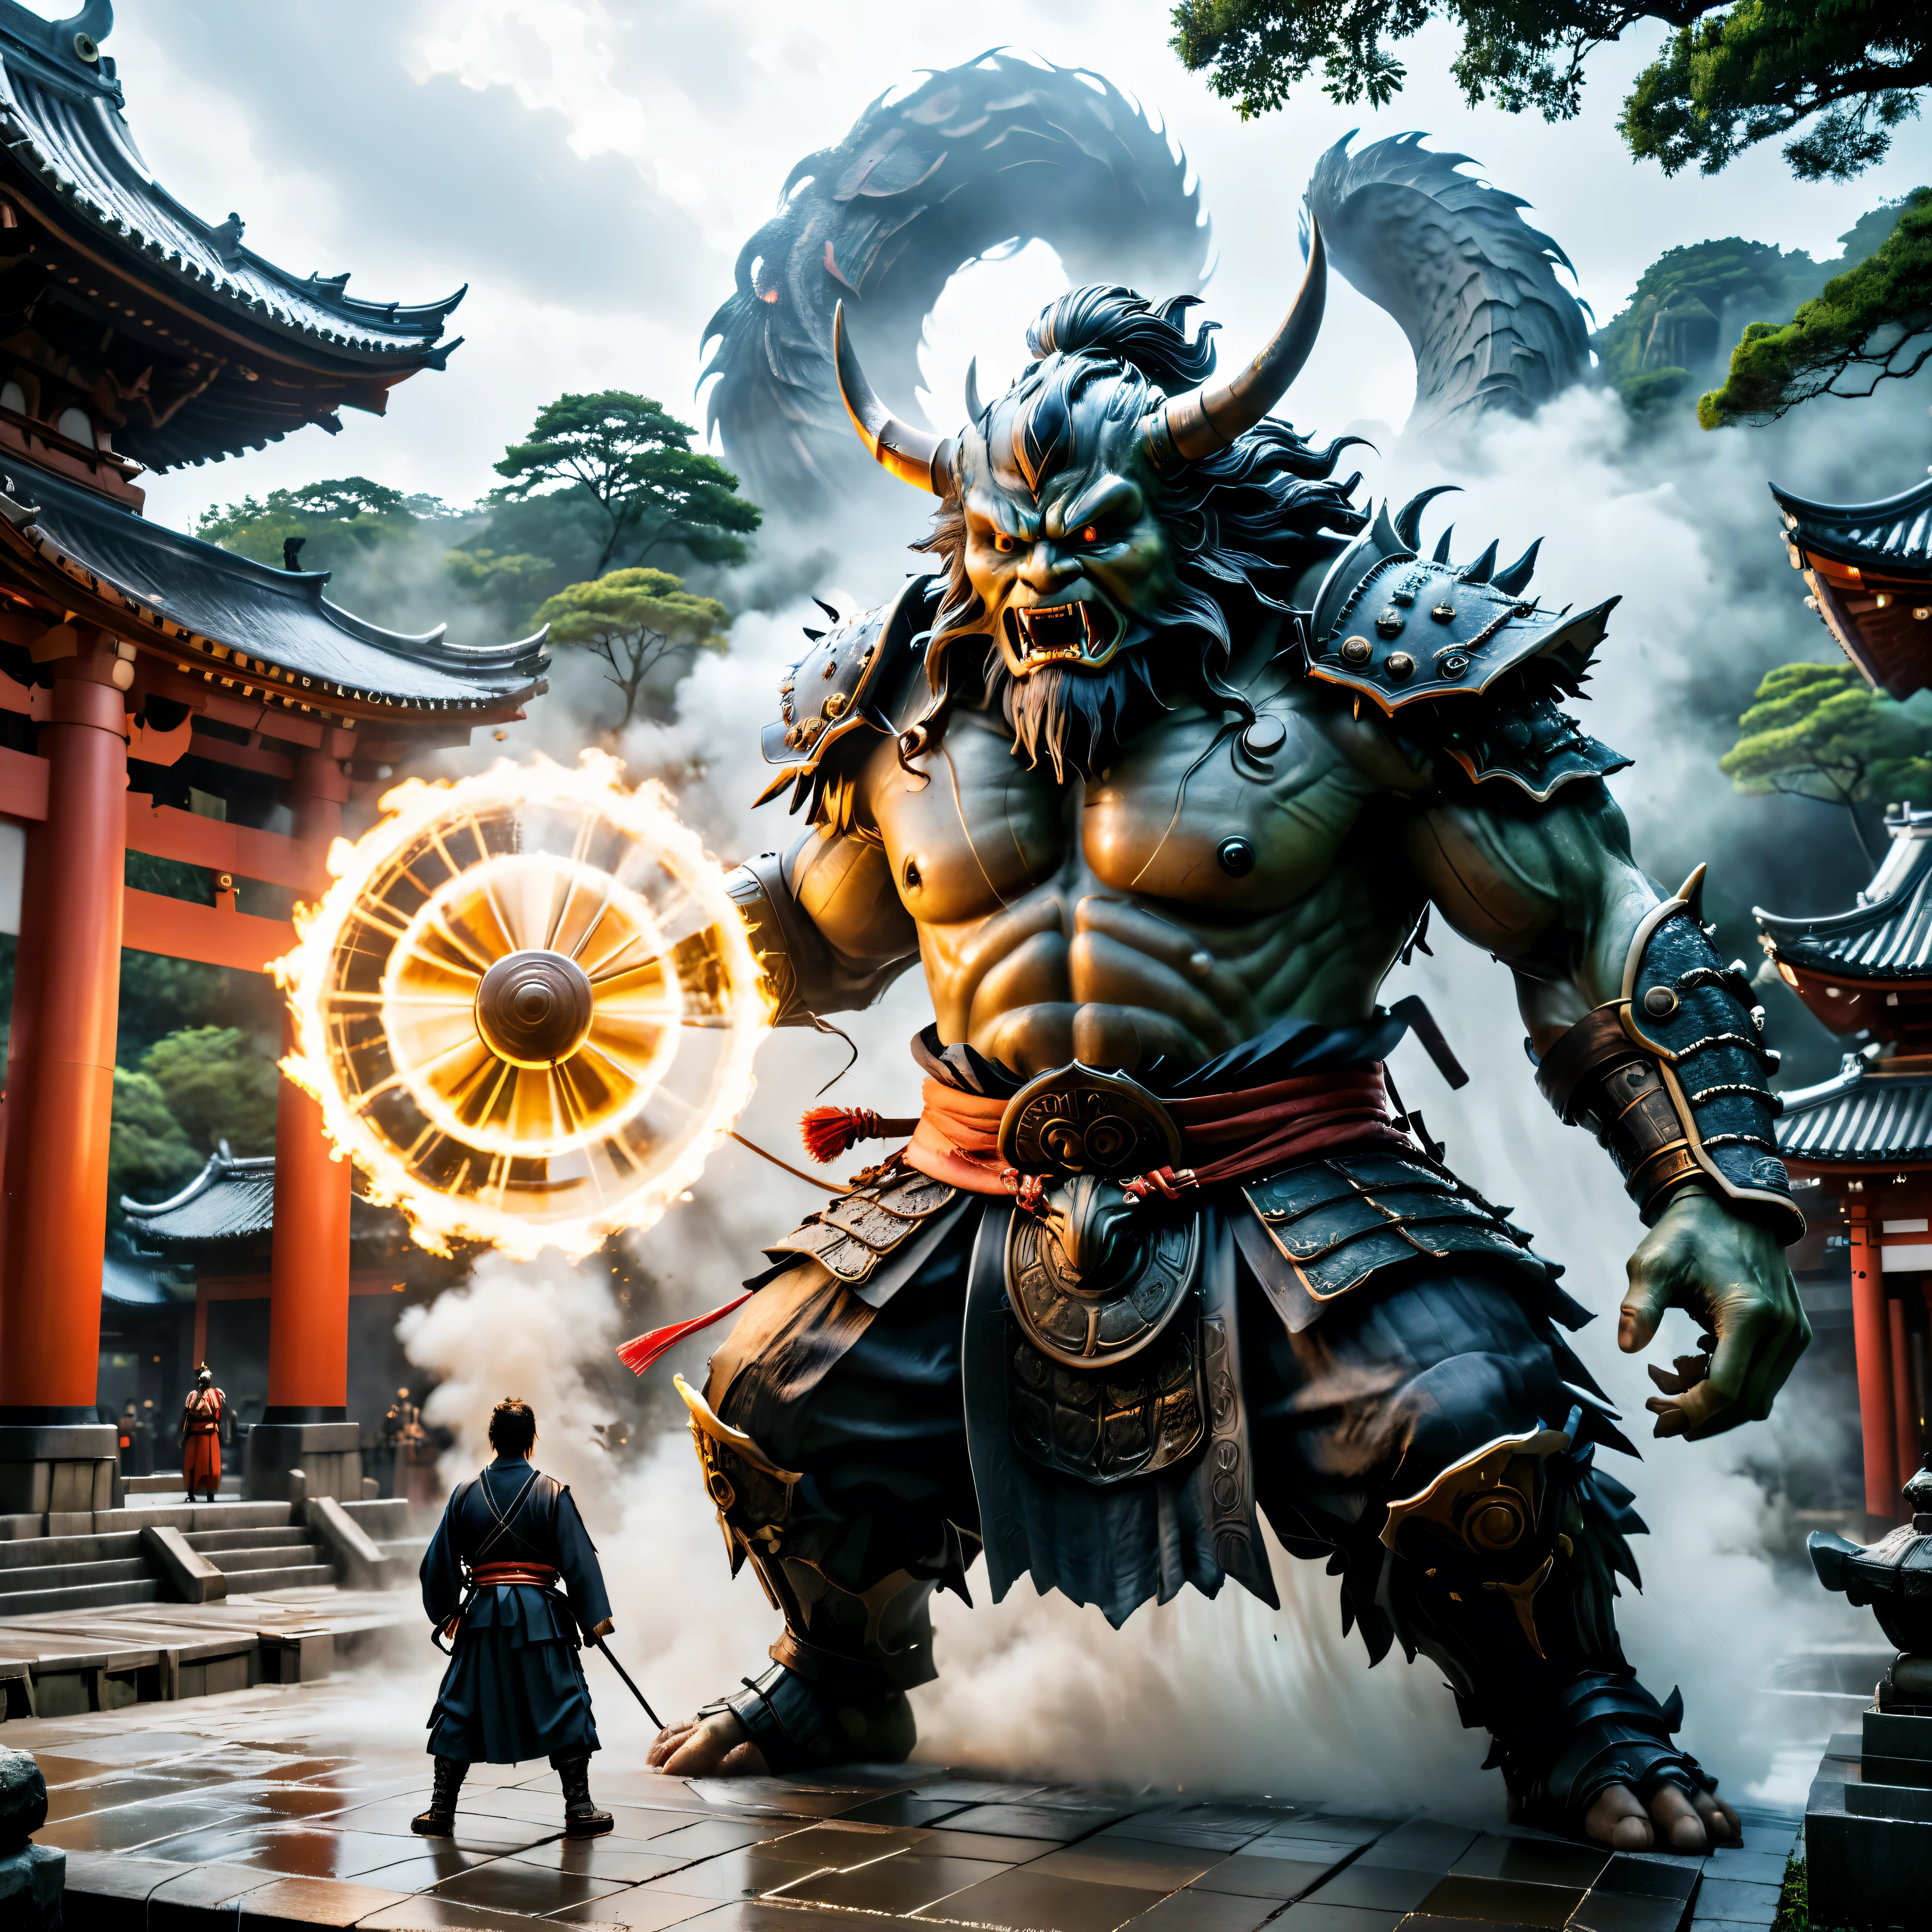 ((Obra maestra en resolución máxima de 16K):1.6),((suave_color_fotografía:)1.5), ((ultra detallado):1.4),((Imágenes fijas tipo película y ángulos dinámicos):1.3),((escena del enfrentamiento final):1.1) | (Cinematic photo of a samurai facing a a yokai monster at a temple), (lente cinemática), (samurai), (a yokai), (brillar), (Efecto Tyndall), (experiencia visual), (Realism), (Realista), gráficos premiados, tiro oscuro, grano de la película, extremadamente detallado, arte digital, RTX, Motor irreal, concepto de escena efecto antideslumbrante, Todo capturado con un enfoque nítido.